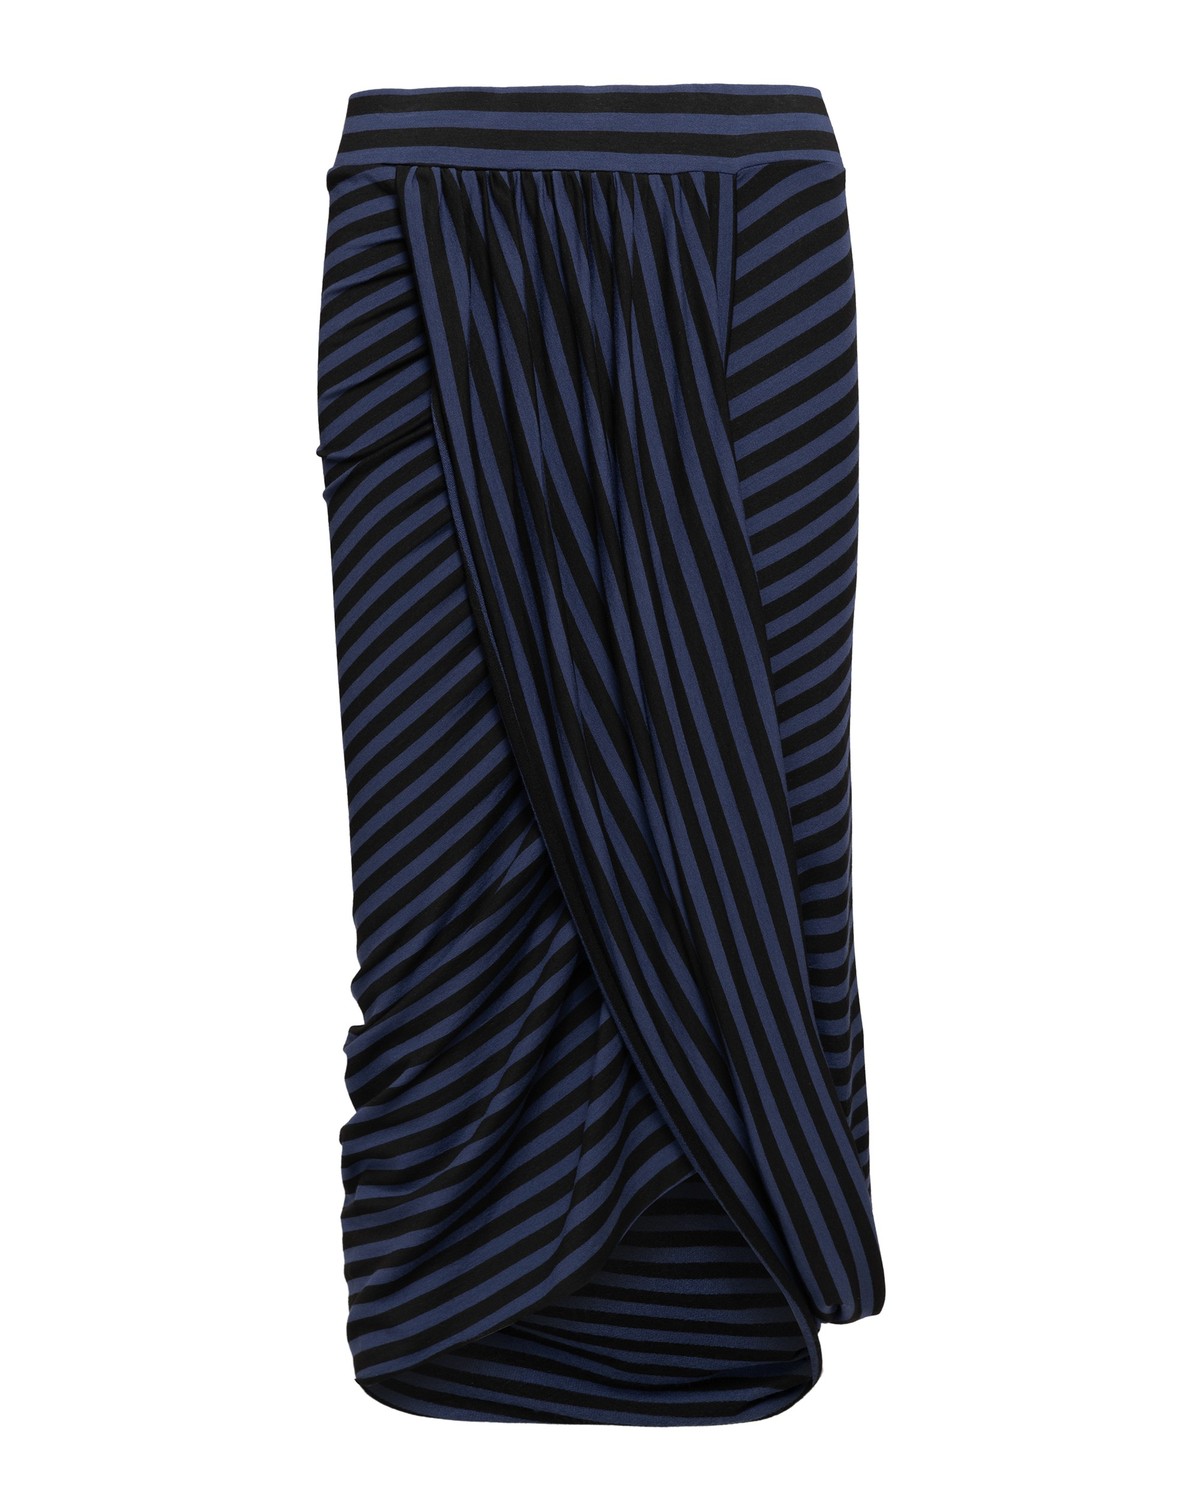 saia transpassada em moletom listrado | draped skirt in striped french terry